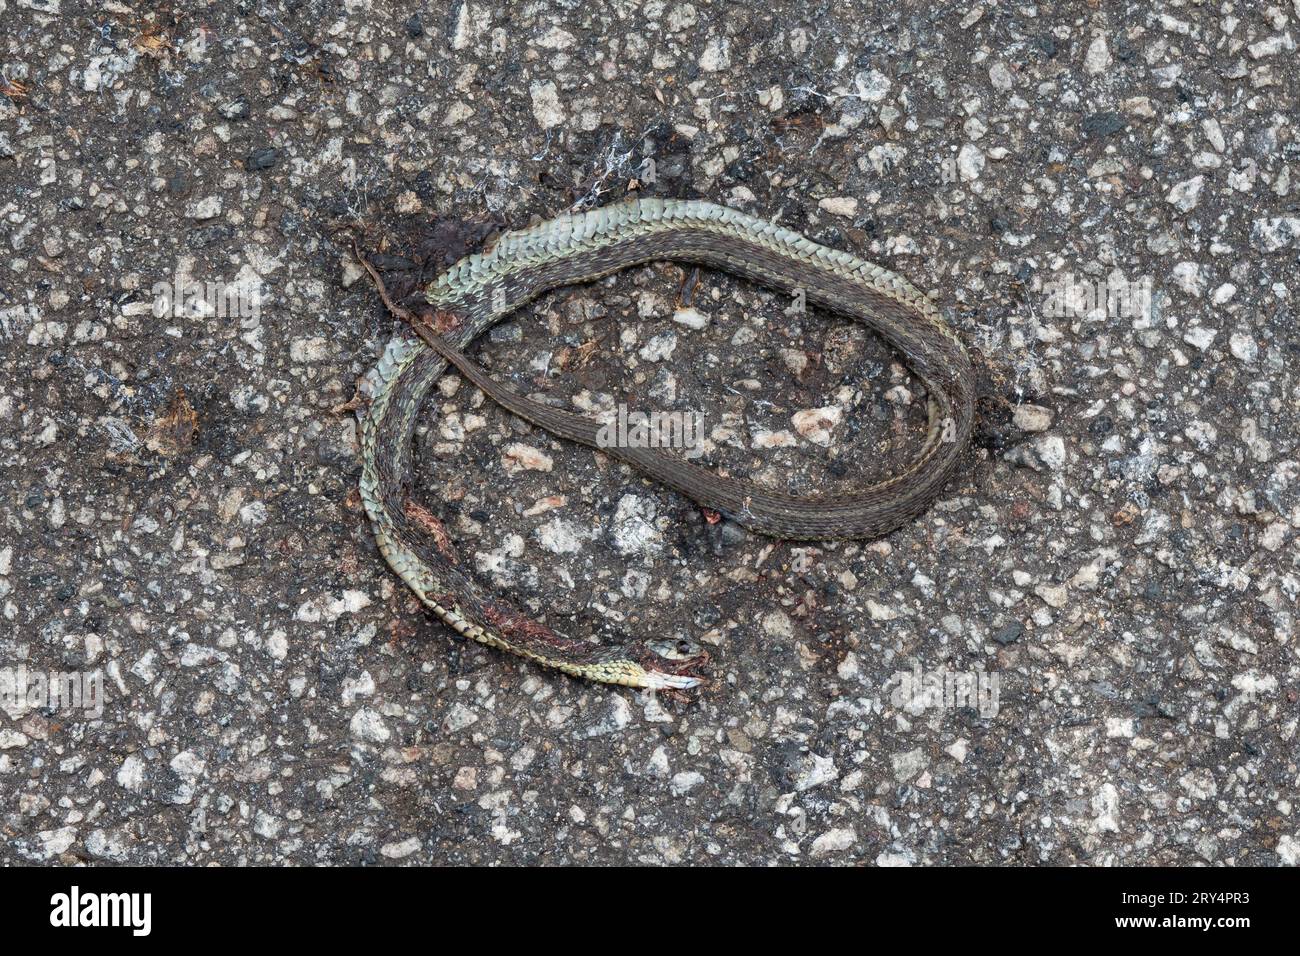 Eine tote östliche Strumpfschlange, Thamnophis sirtalis sirtalis, überfahren von einem Fahrzeug auf einer alten Asphaltstraße. Stockfoto